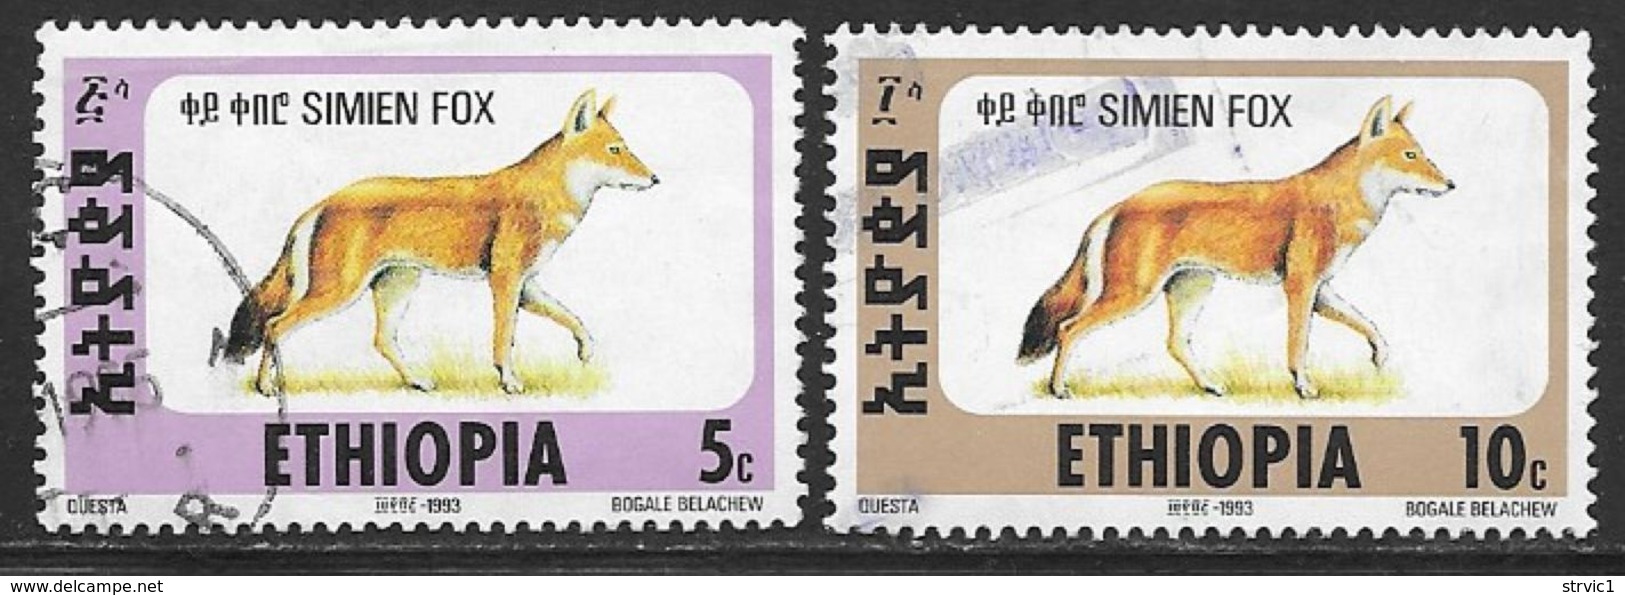 Ethiopia Scott # 1393A-B Used Simien Fox, 1994 - Ethiopia